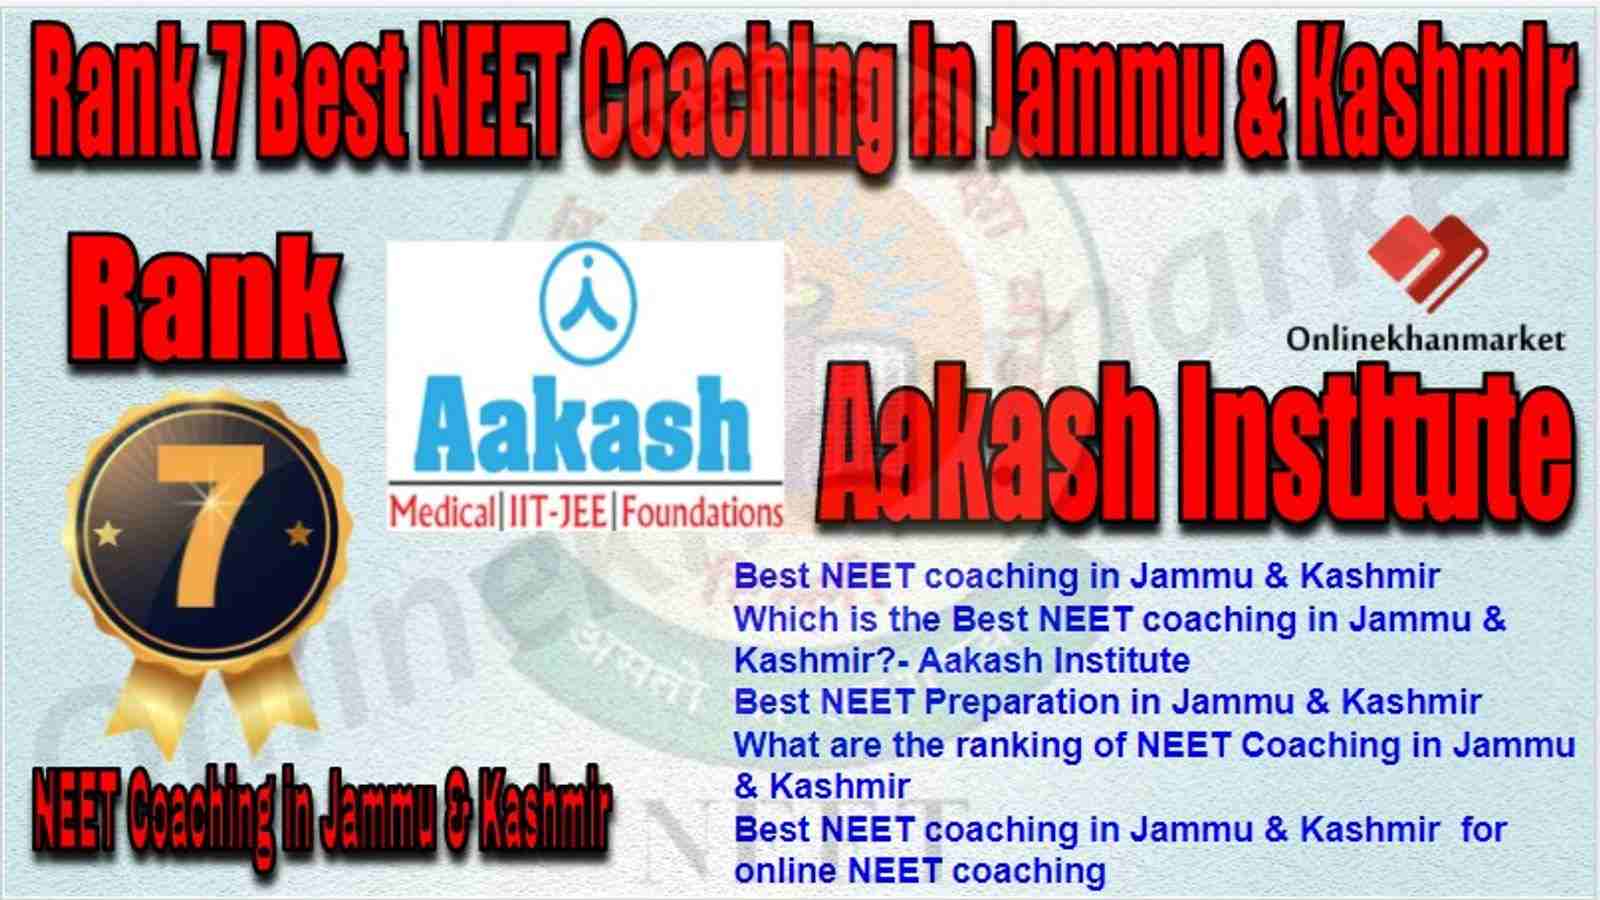 Rank 7 Best NEET Coaching in jammu &kashmir